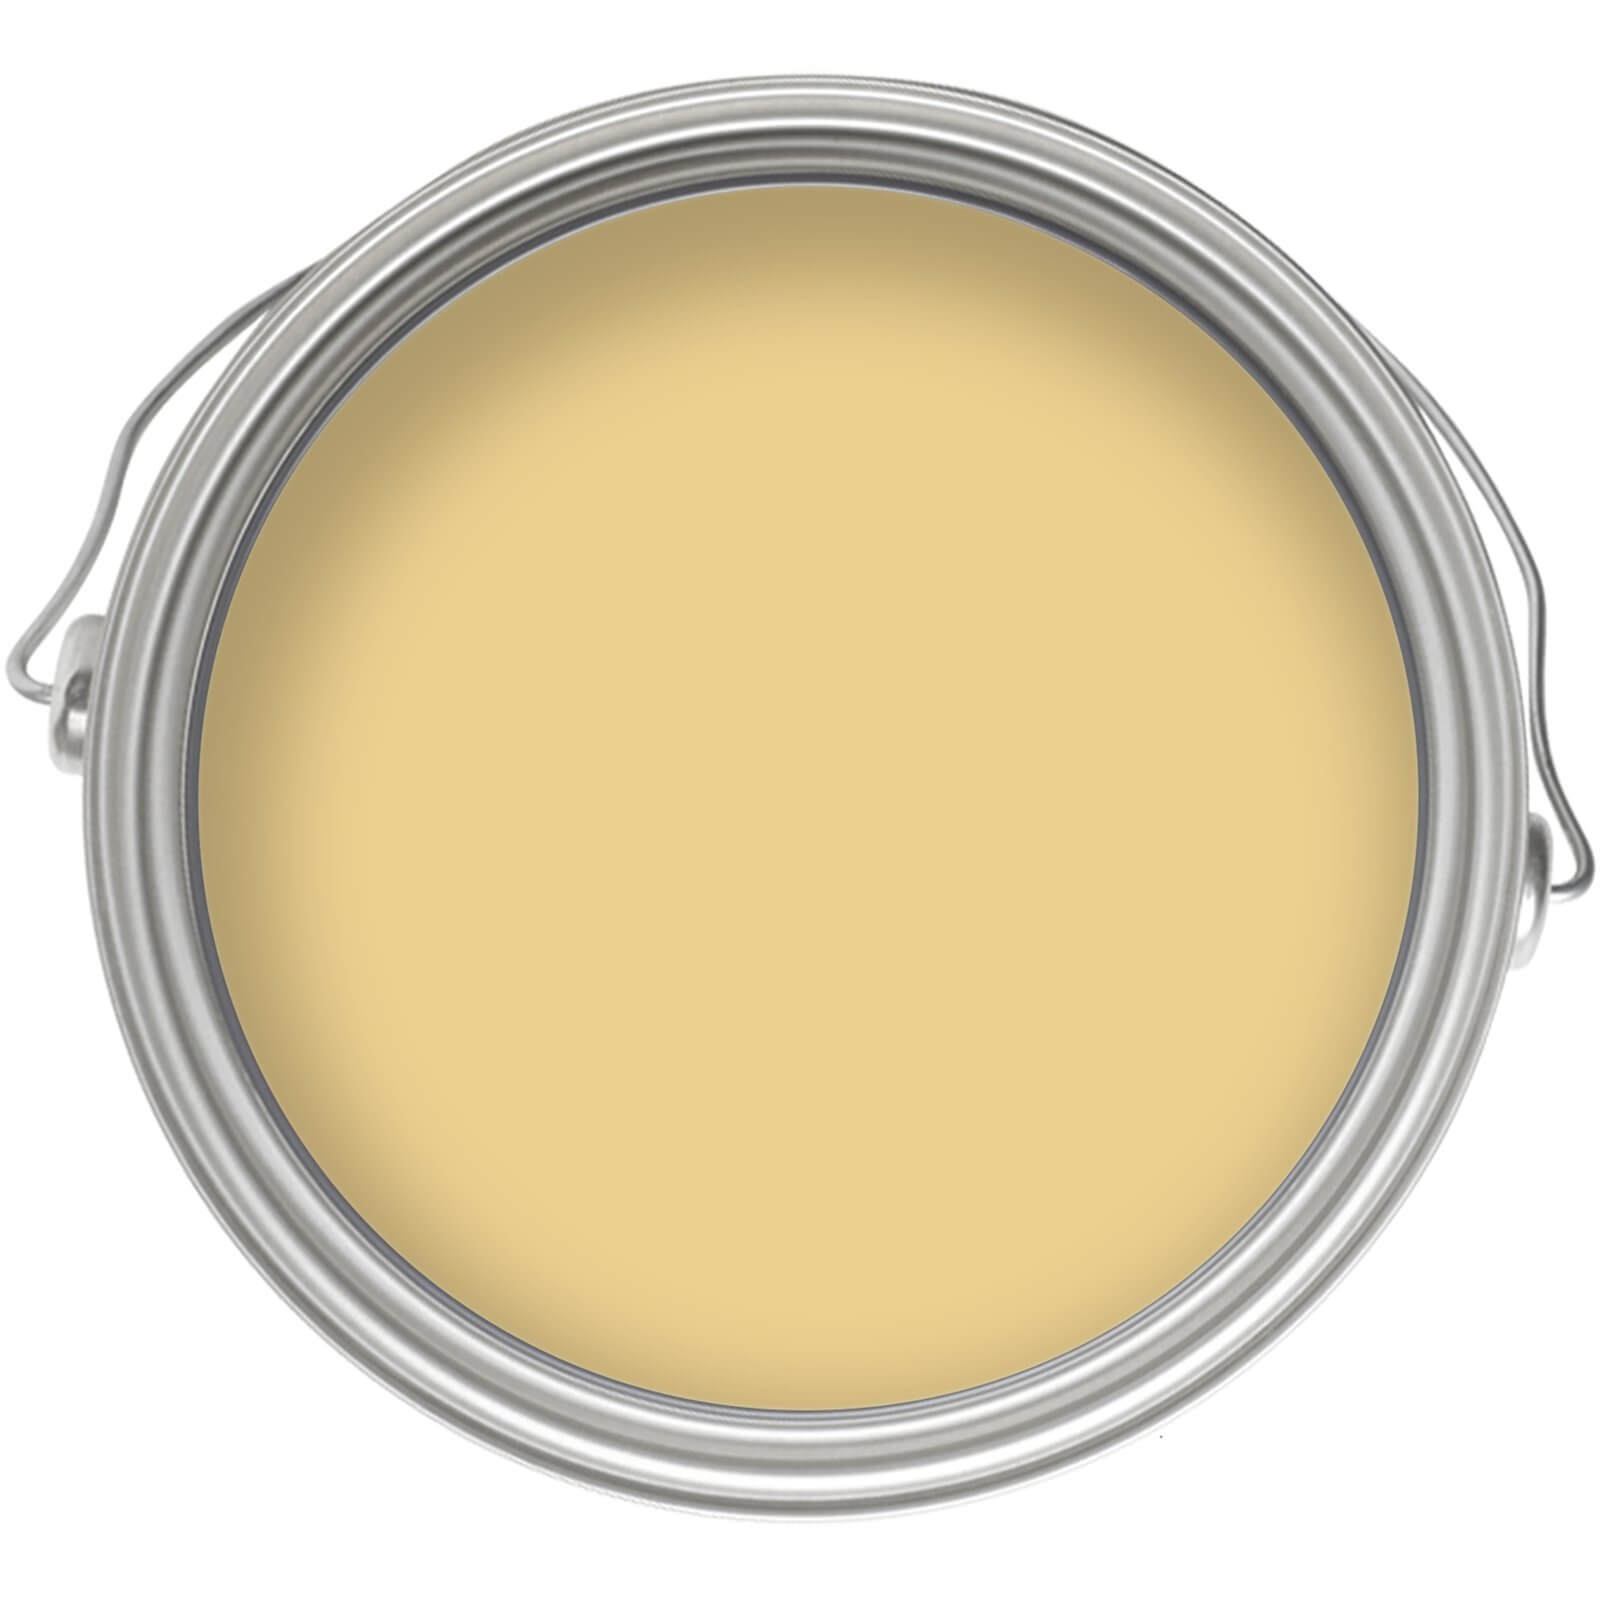 Homebase Matt Emulsion Paint Soft Mustard - 2.5L